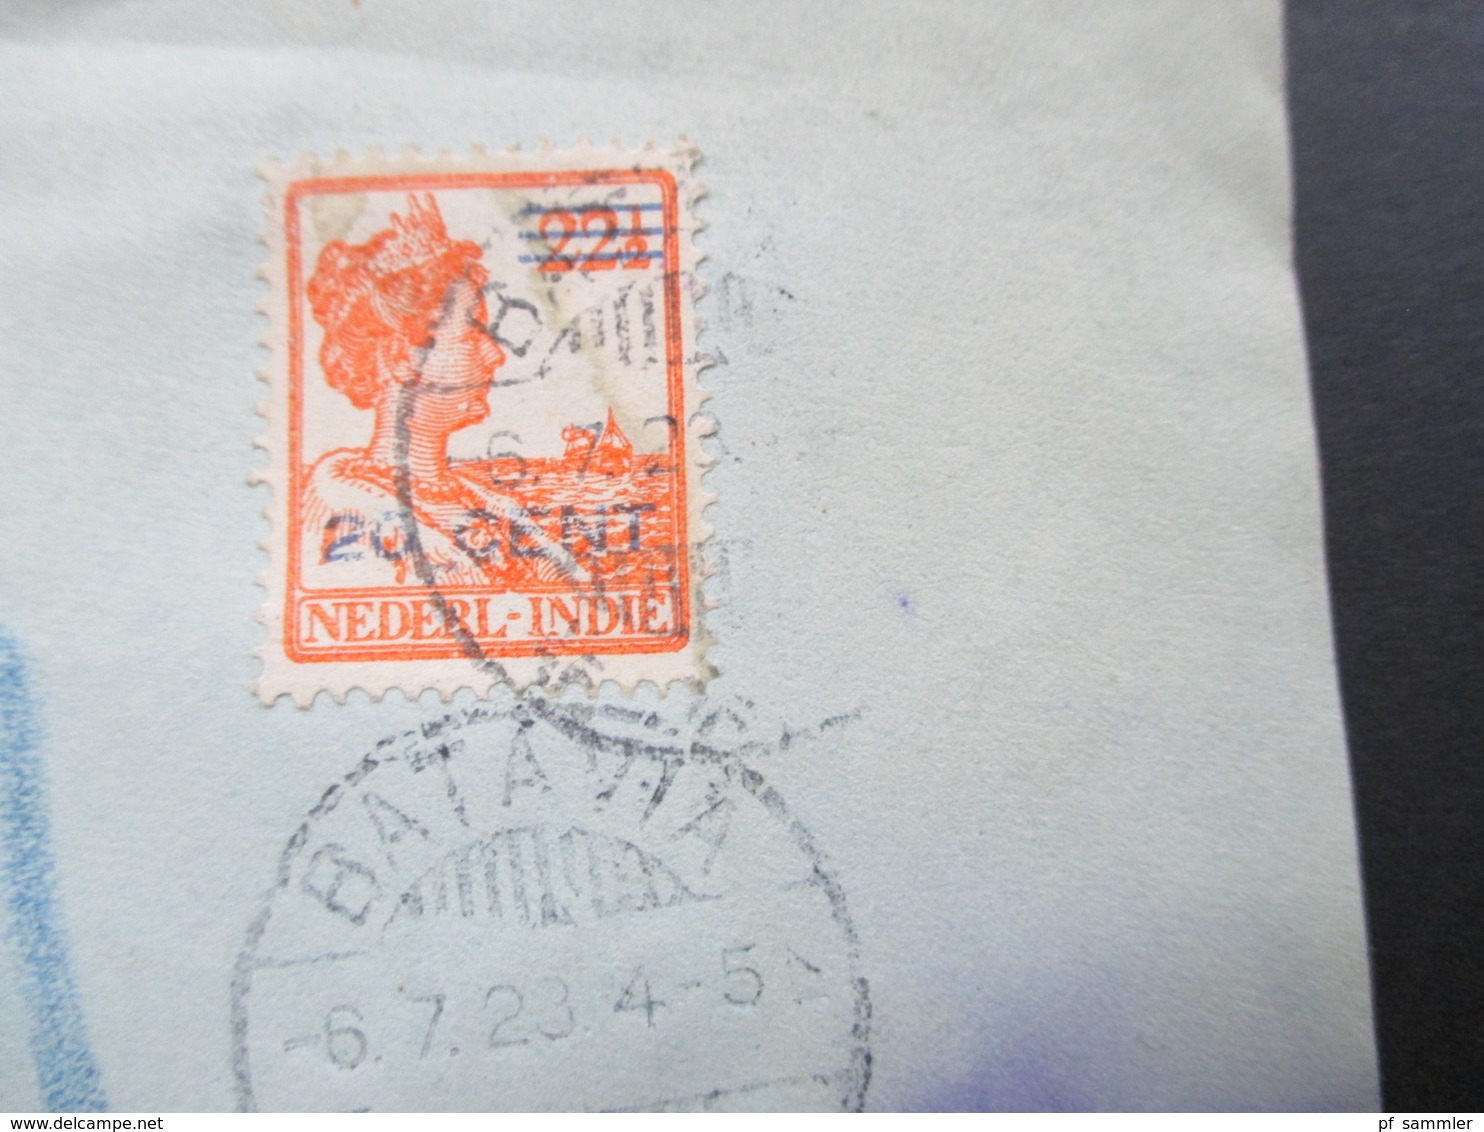 Niederländisch Indien 1923 Registered Letter Ned Indie Batavia 924 Beleg Oesterreichisches Konsulat Für Nied. Ost Indien - Nederlands-Indië